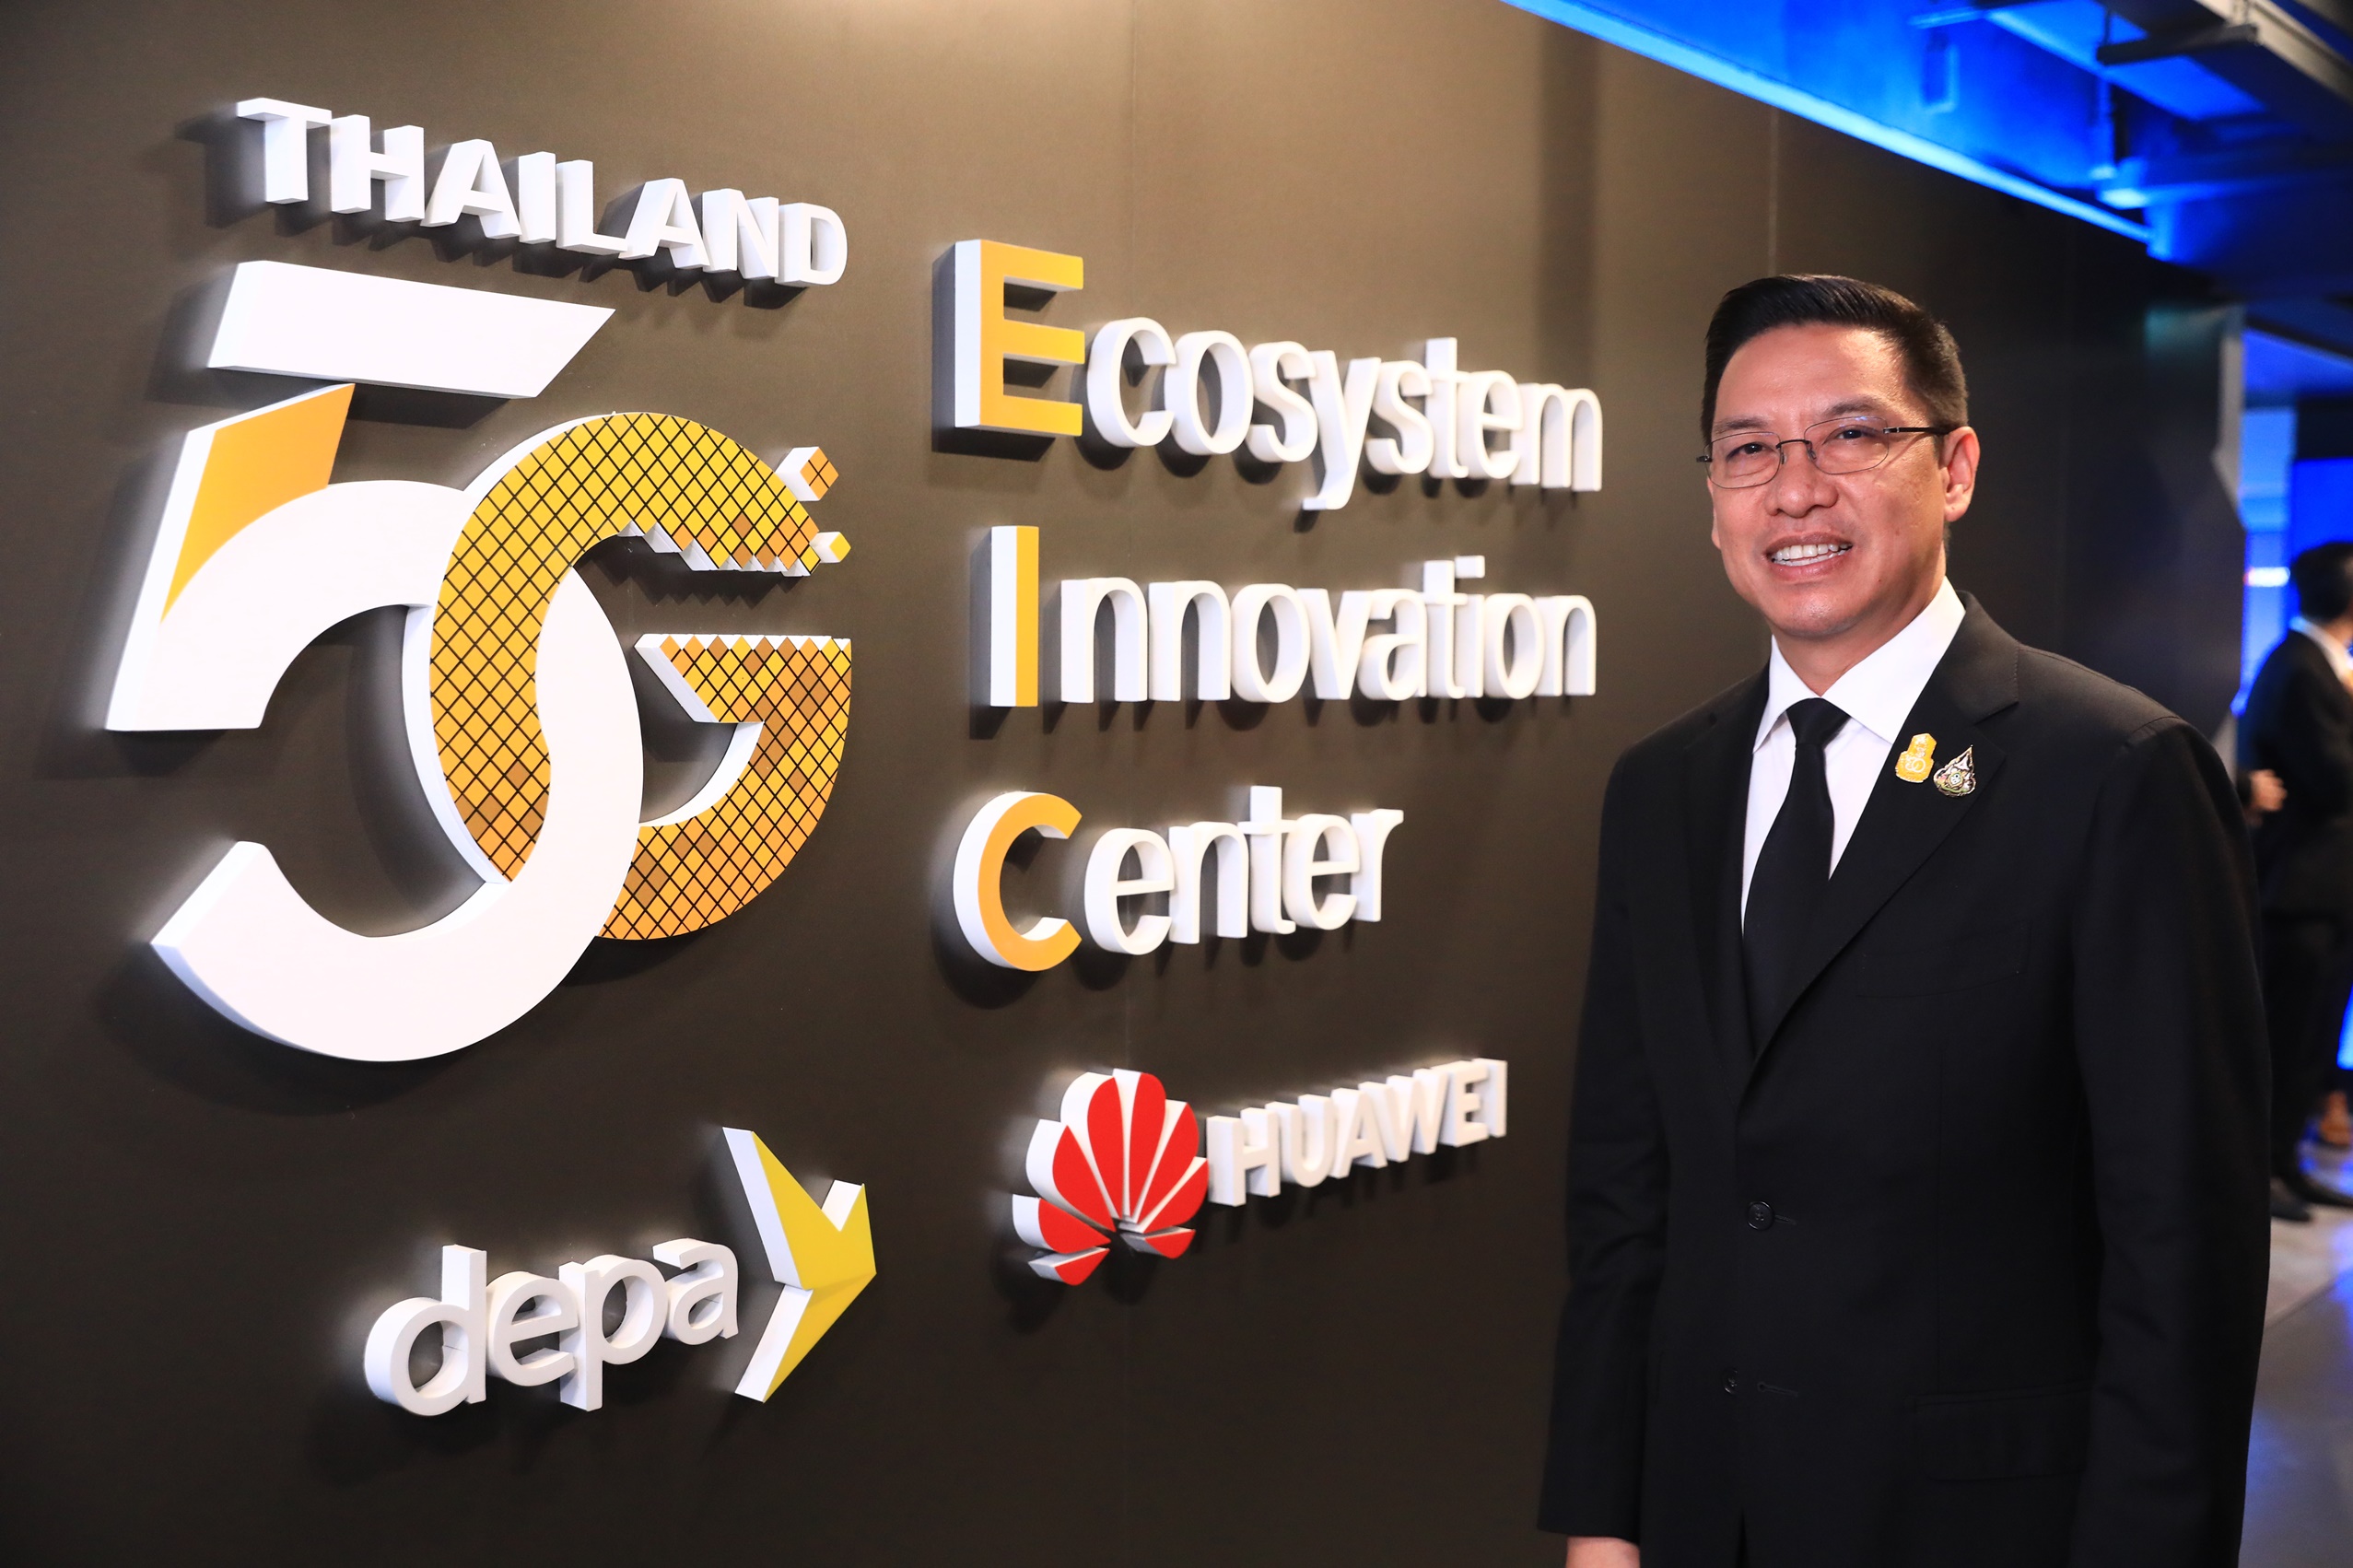 กระทรวงดิจิทัลฯ โดยดีป้า ผนึกกำลังหัวเว่ยฯ เปิดศูนย์ Thailand 5G Ecosystem Innovation Center (5G EIC) เร่งพลิกโฉมทุกอุตสาหกรรมสู่ดิจิทัล